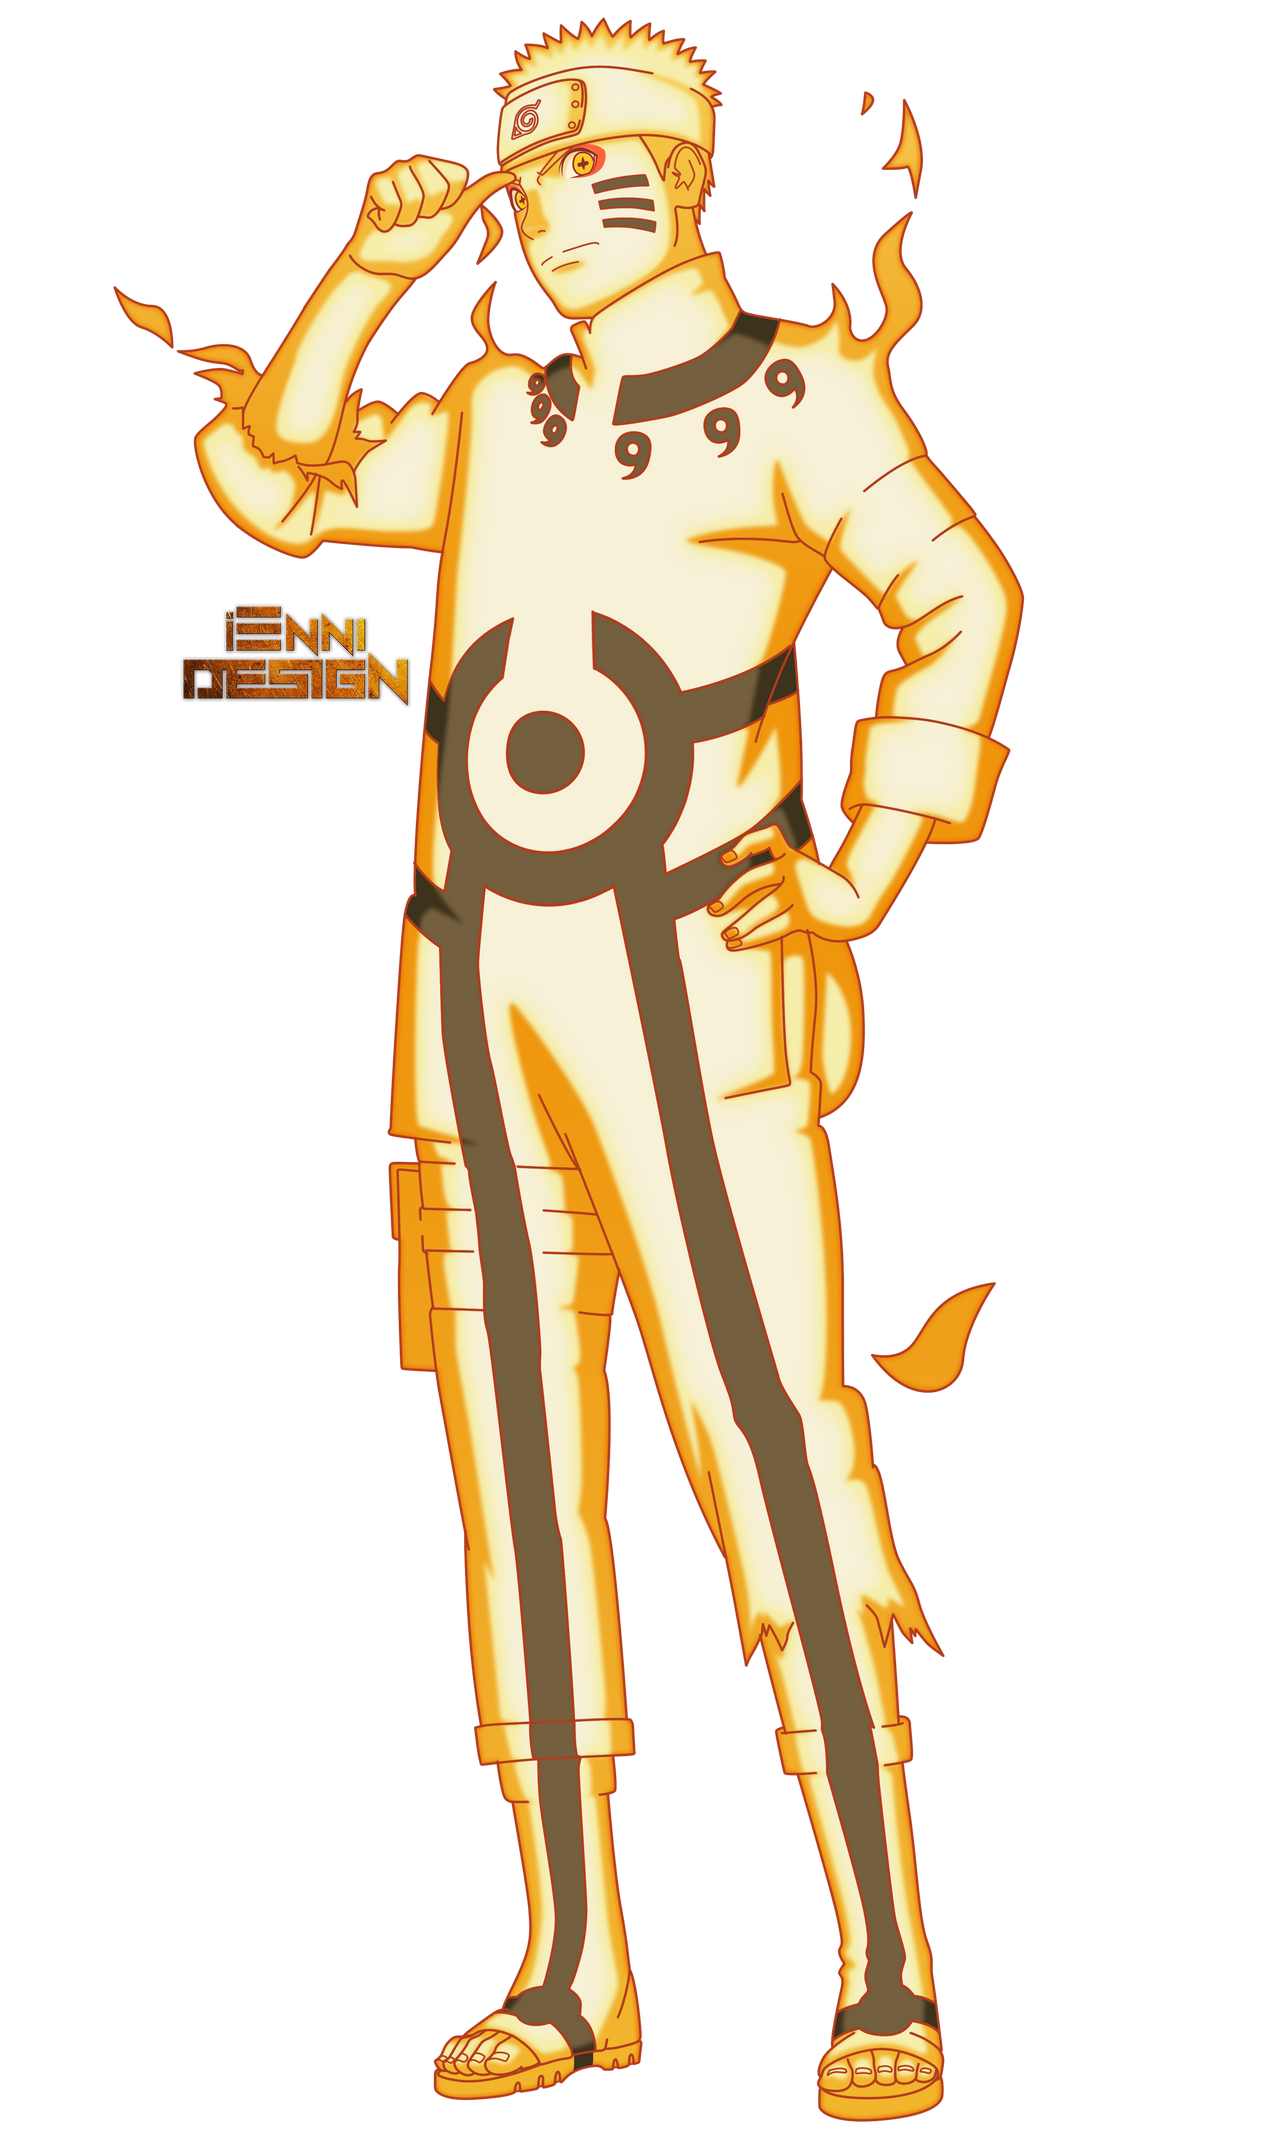 Boruto-Naruto-the-Movie-Character-Designs-Naruto-Uzumaki